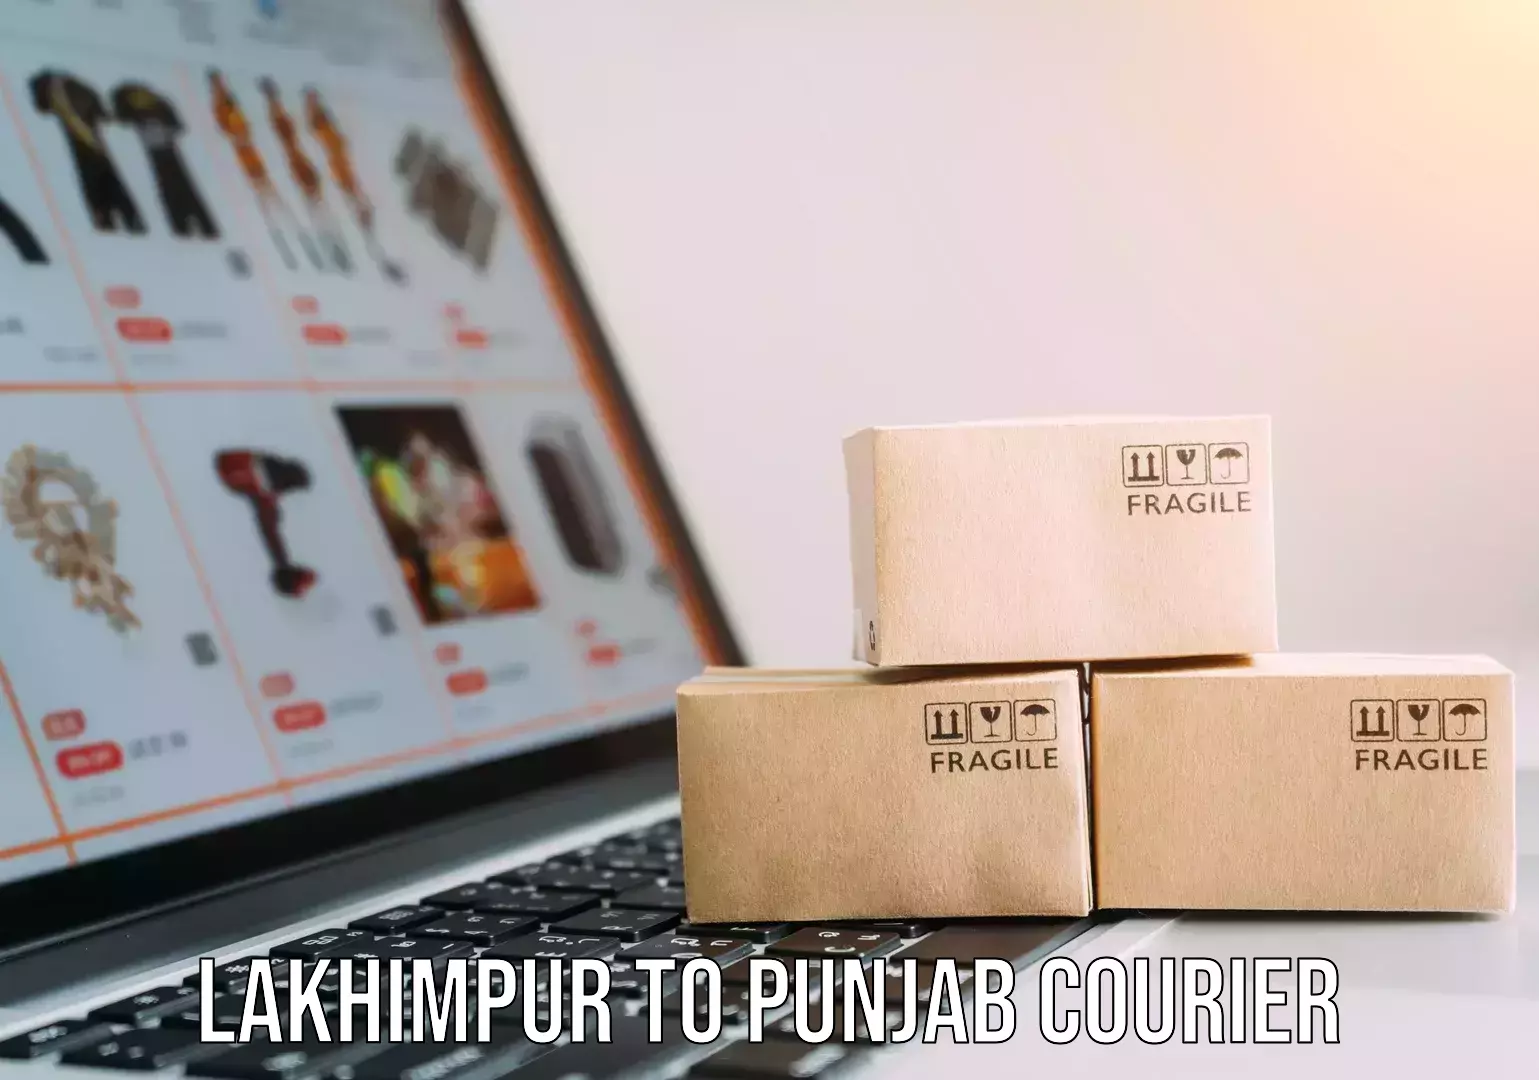 Professional movers Lakhimpur to Punjab